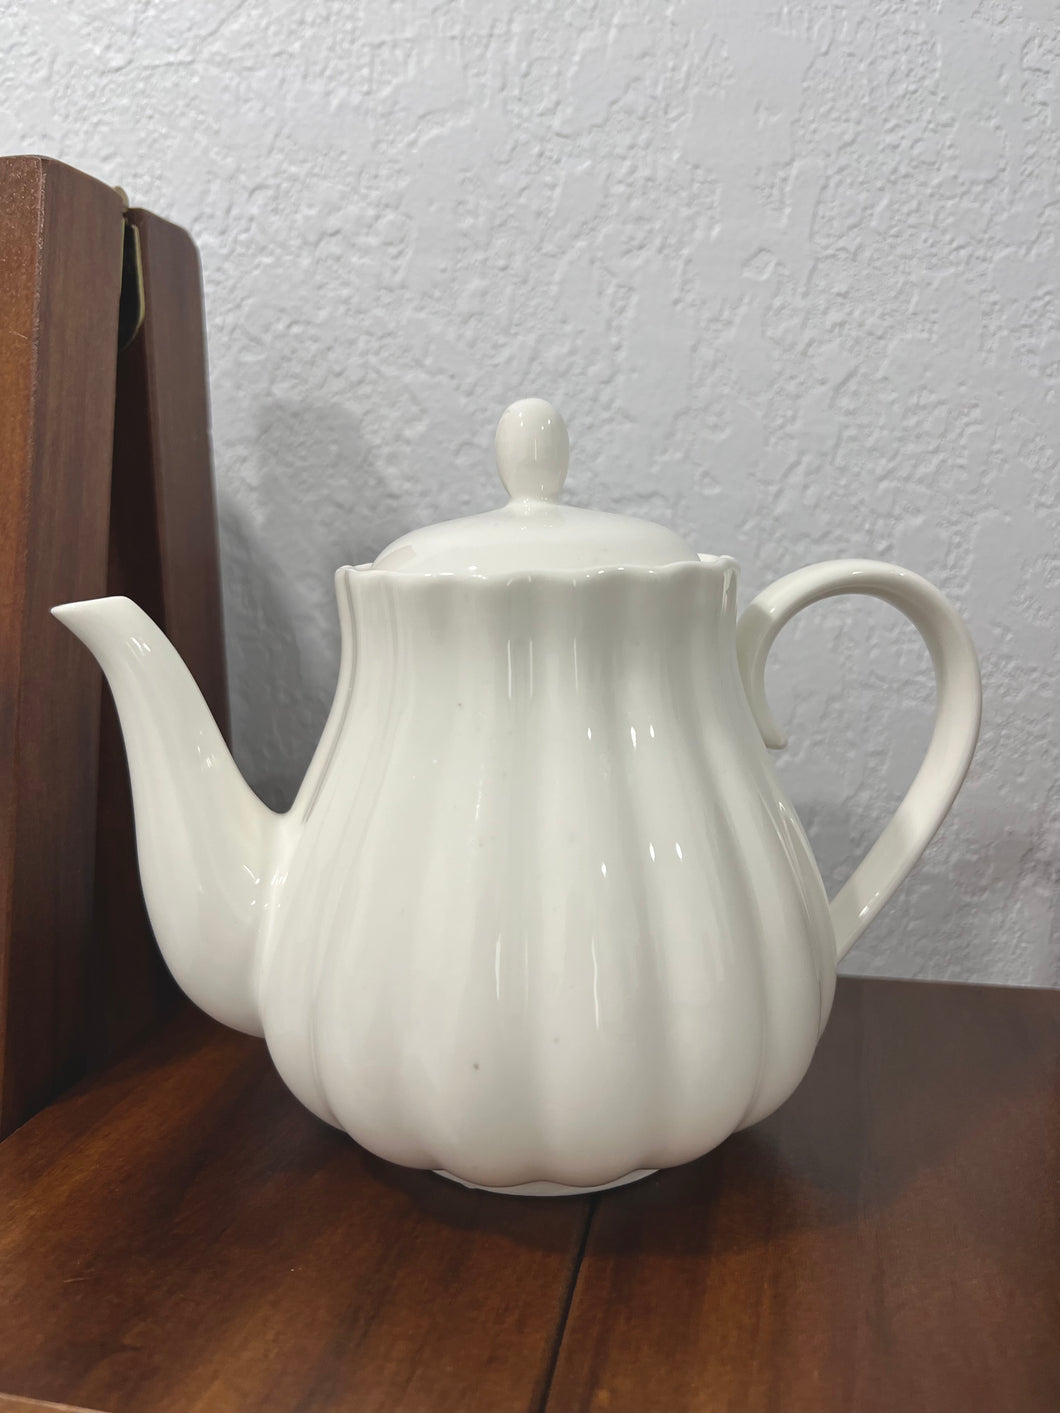 Mrs. Potts - Dainty Tea Pot